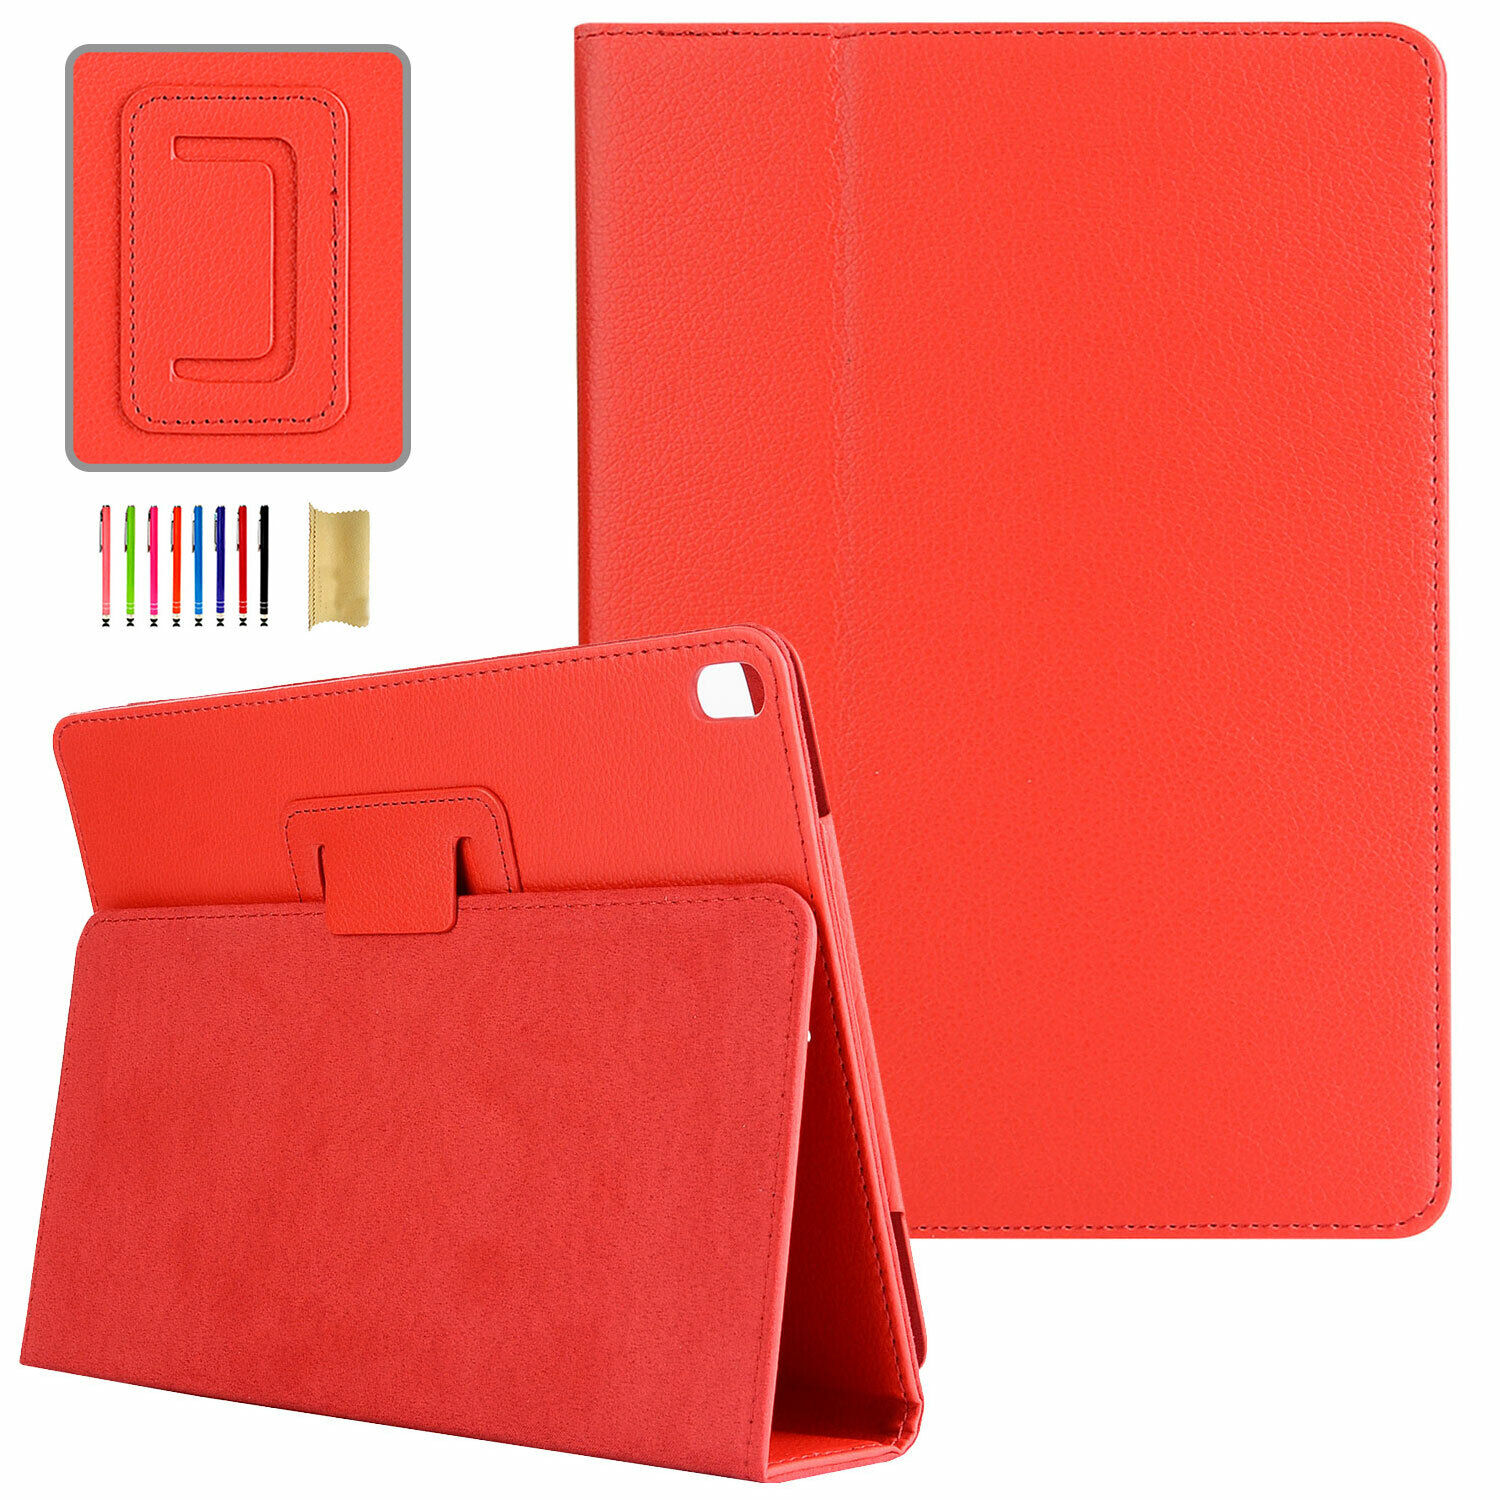 Slim Folio Stand PU Leather Case Cover For iPad mini 6/iPad 8th/7th/6th Gen/Pro